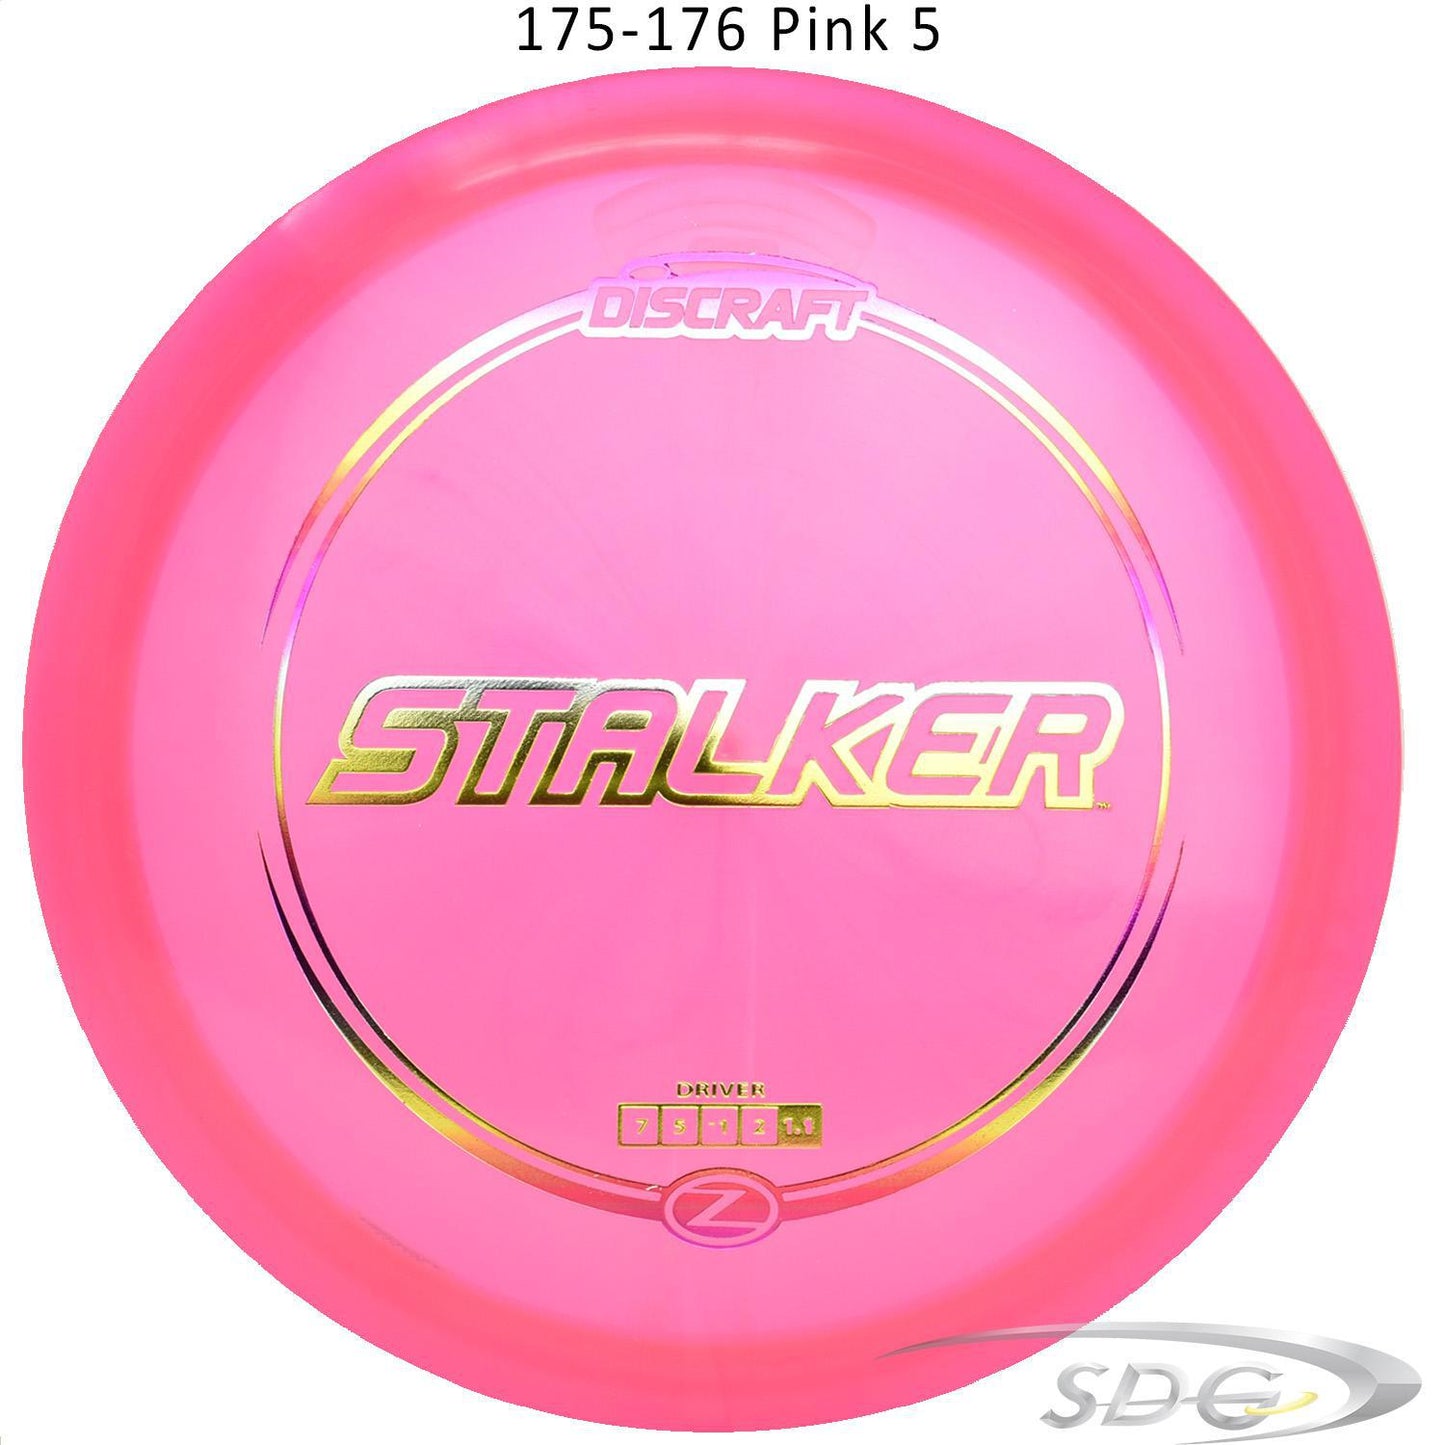 discraft-z-line-stalker-disc-golf-fairway-driver 175-176 Pink 5 